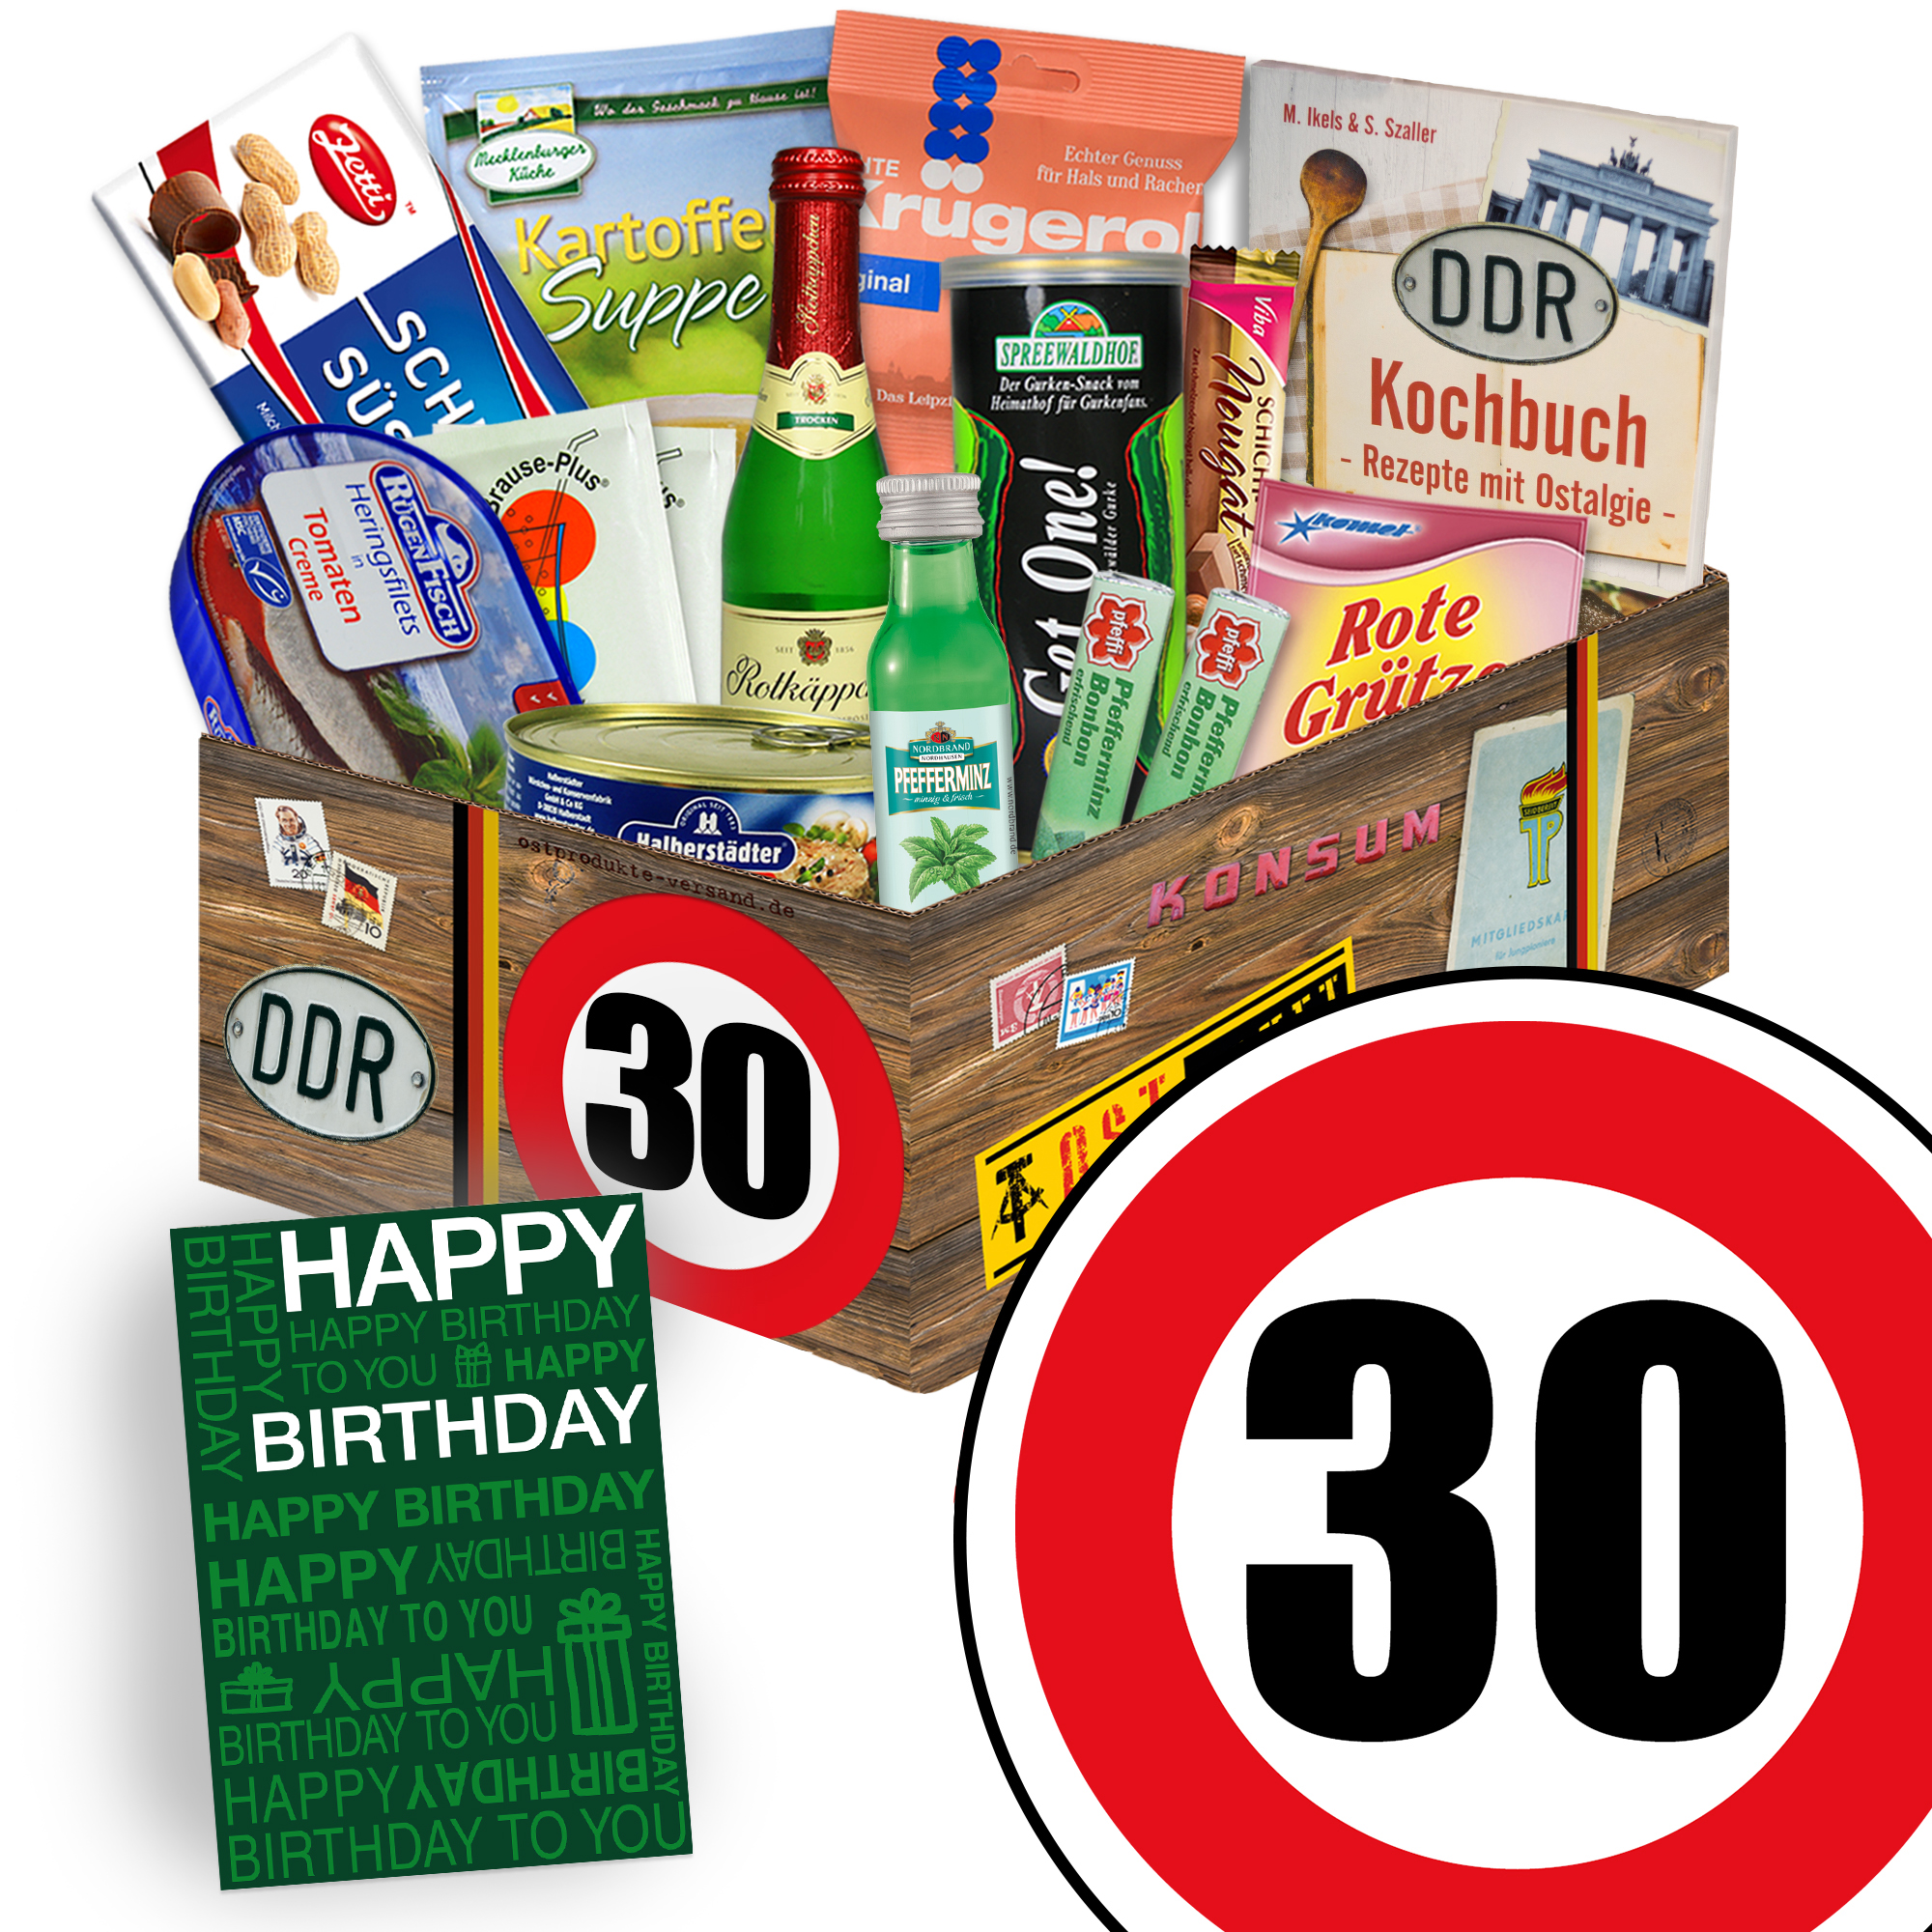 Zum 30 Geburtstag Ddr Spezialitaten Box Geschenkideen 30 Geburtstag Ebay